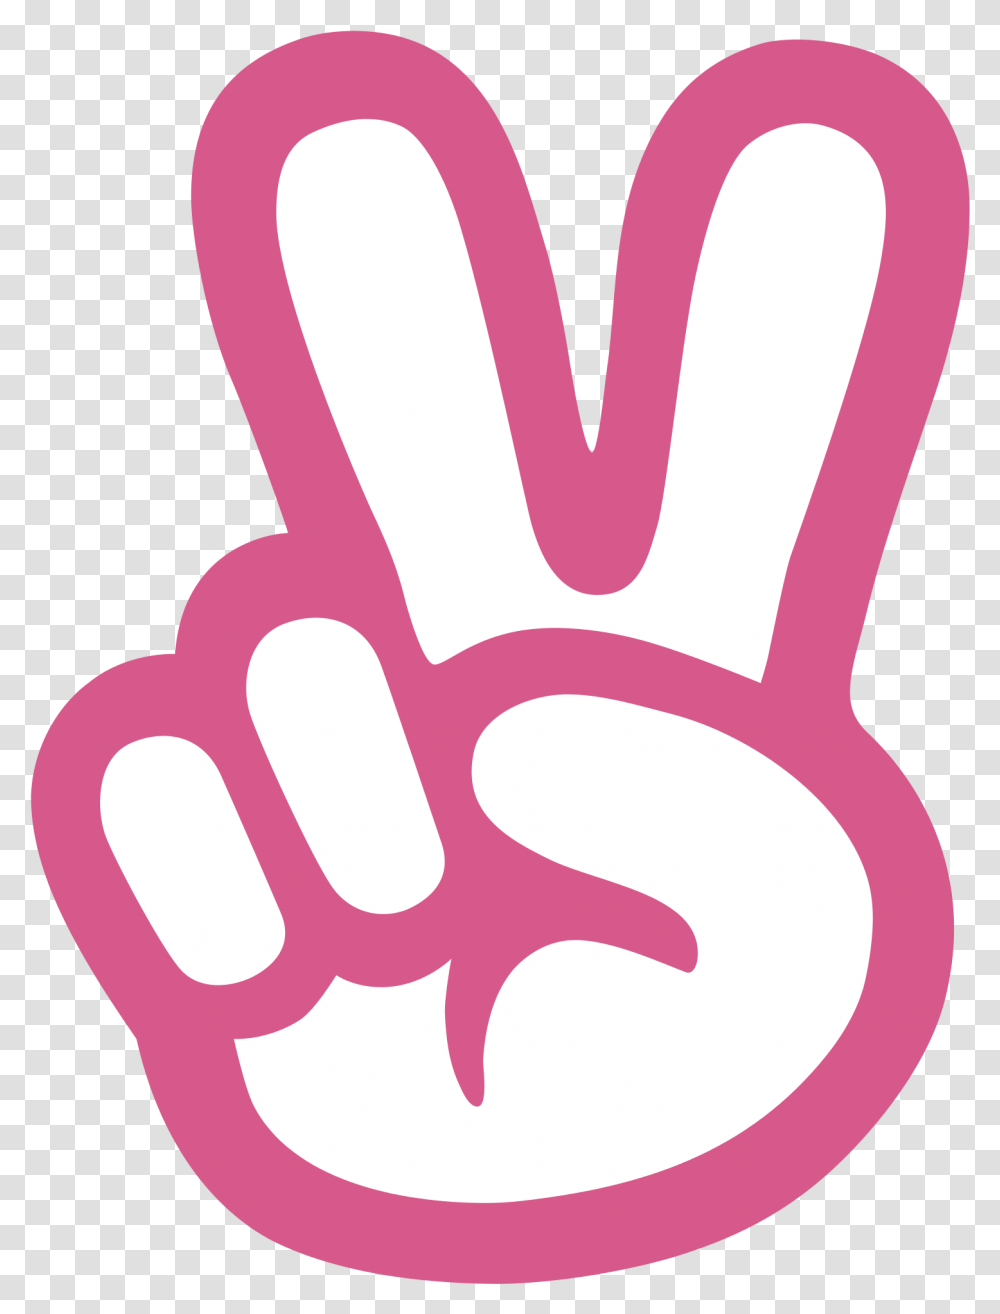 Emoticon V Sign Finger Peace Sign Svg, Hand, Fist, Scissors, Blade Transparent Png